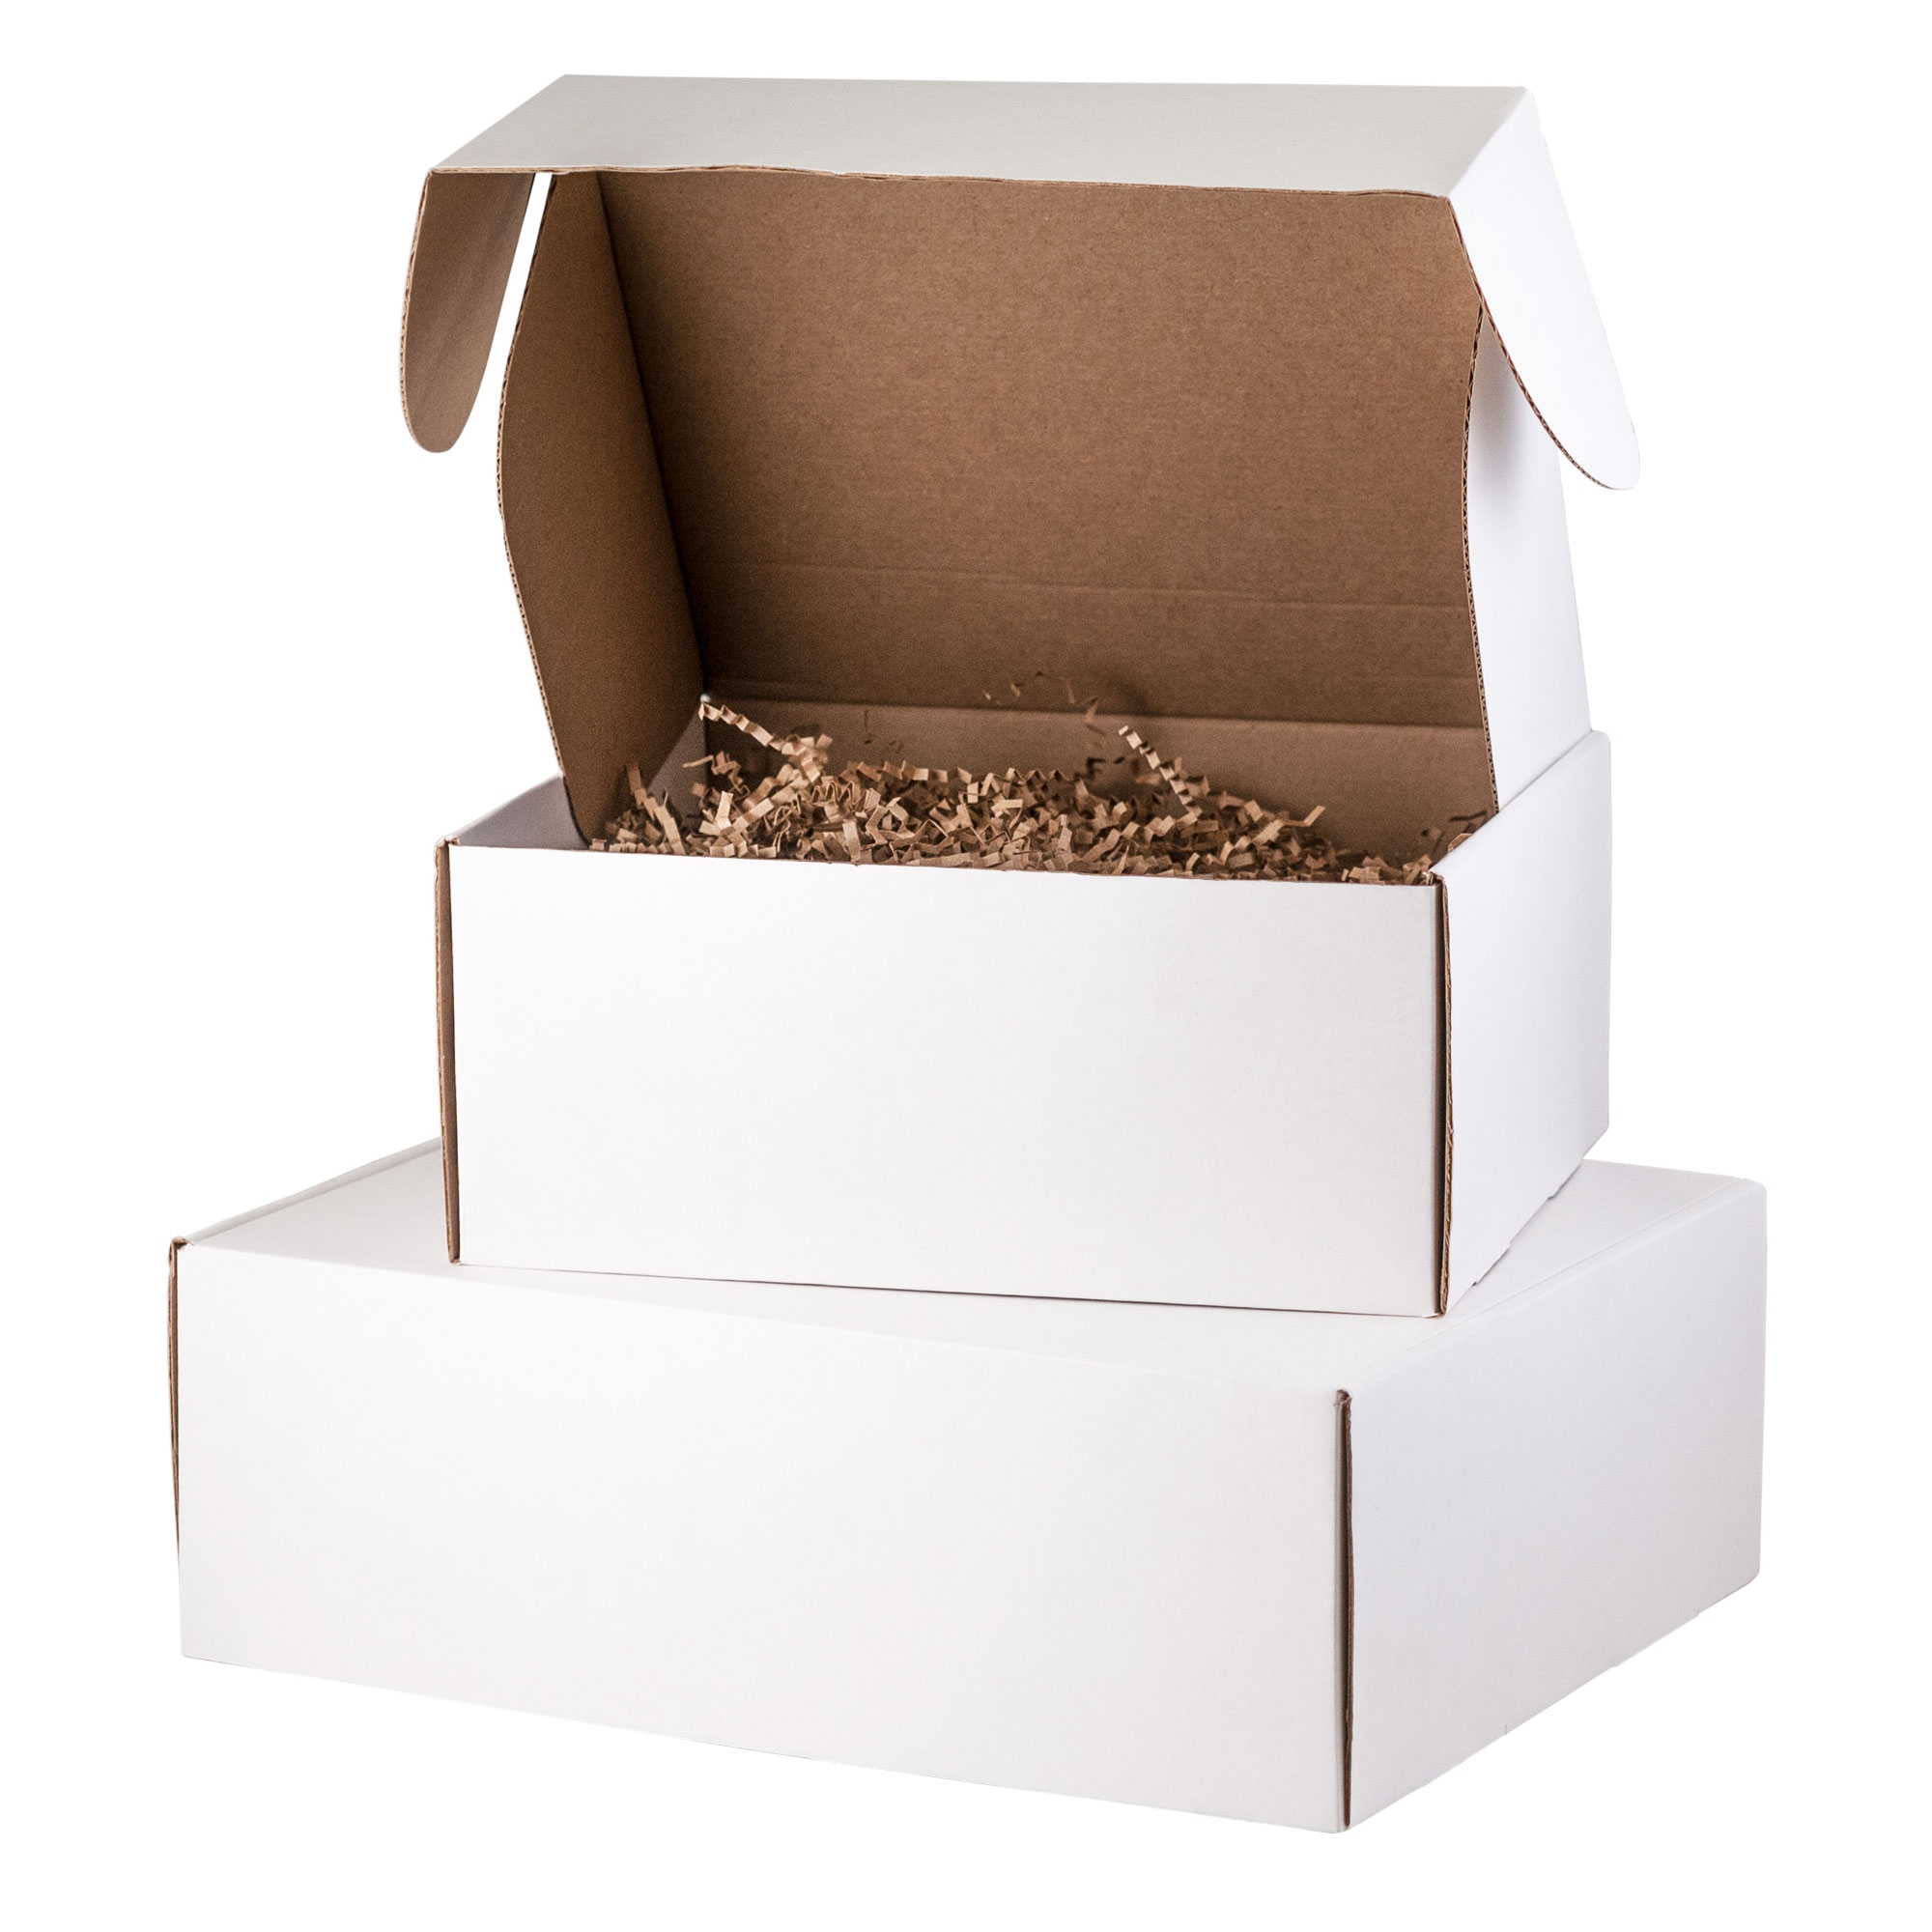 Бумажный наполнитель для подарочной упаковки, крафт (50 гр./упак.), коричневый